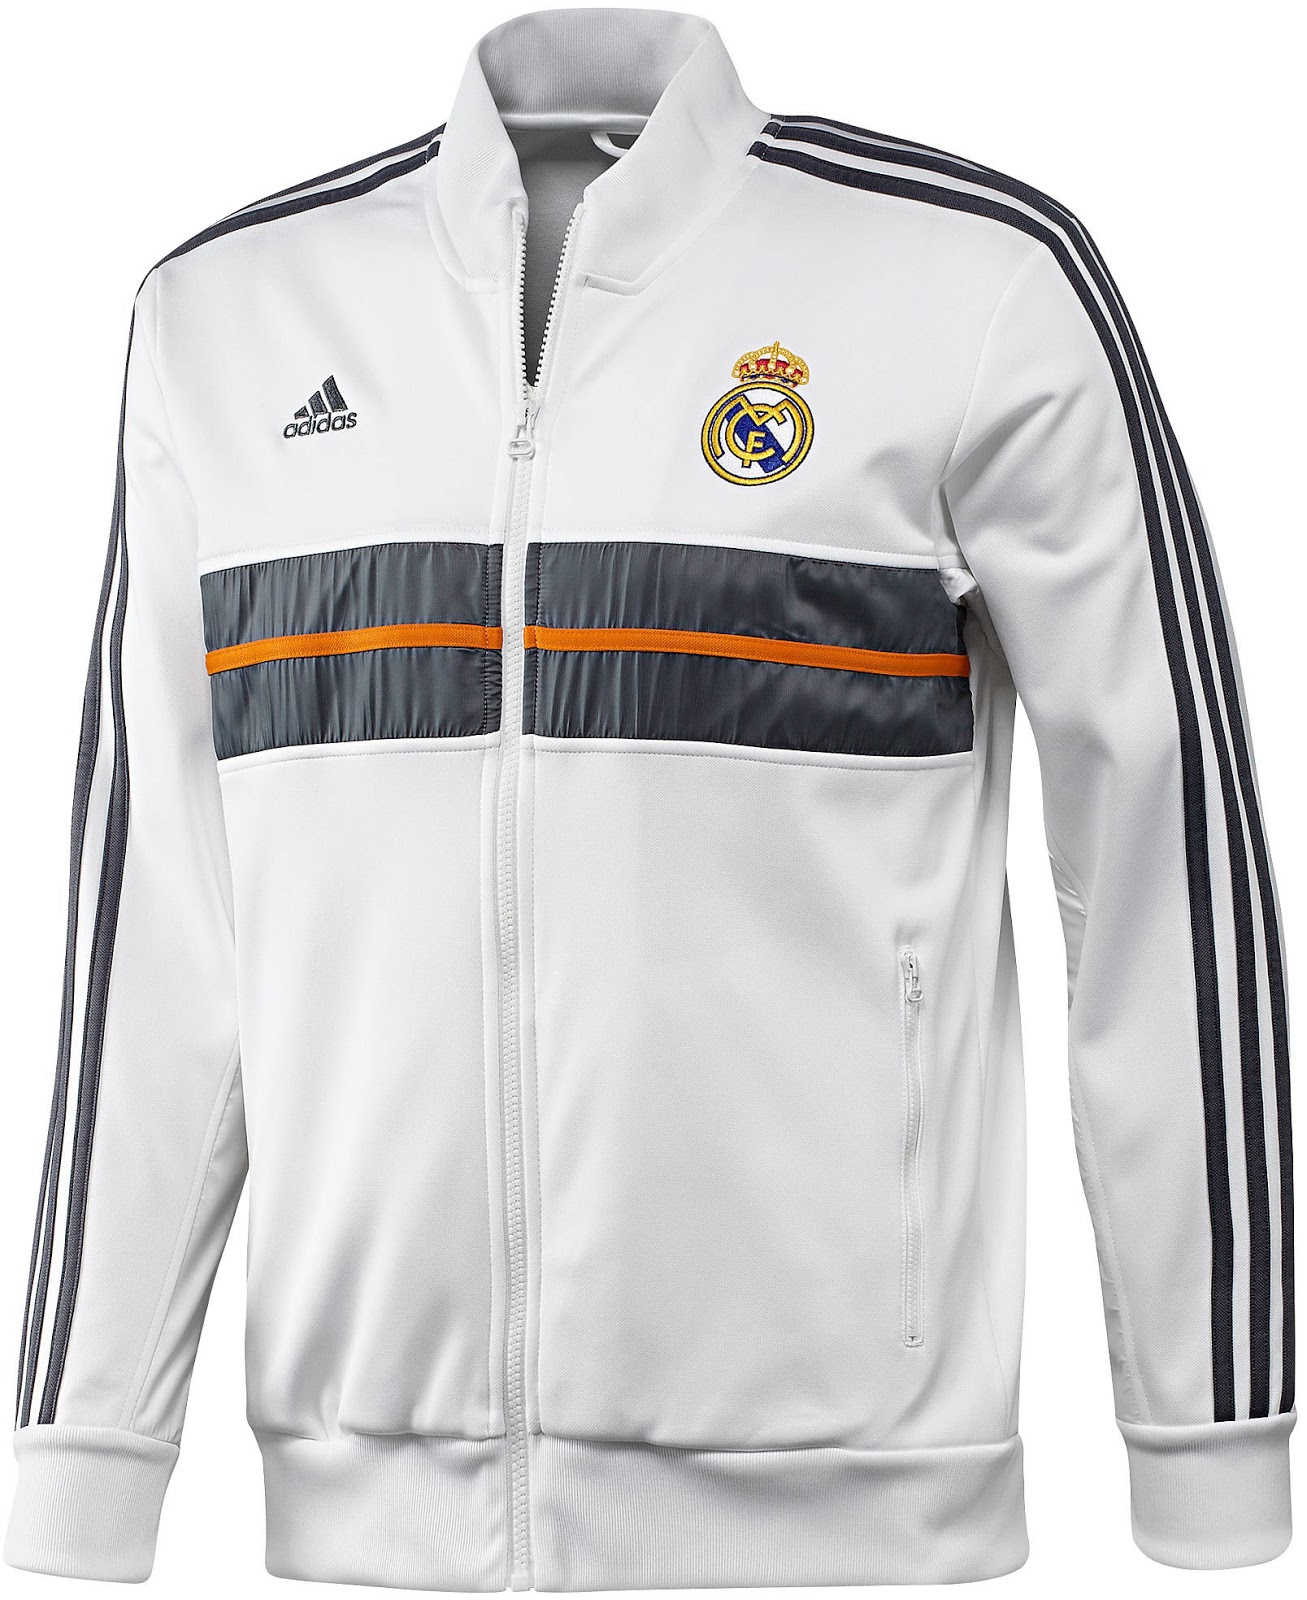 Tegenstander Ambitieus ventilator Real Madrid 13-14 (2013-14) Training Kit + Athem Jackets Released - Footy  Headlines